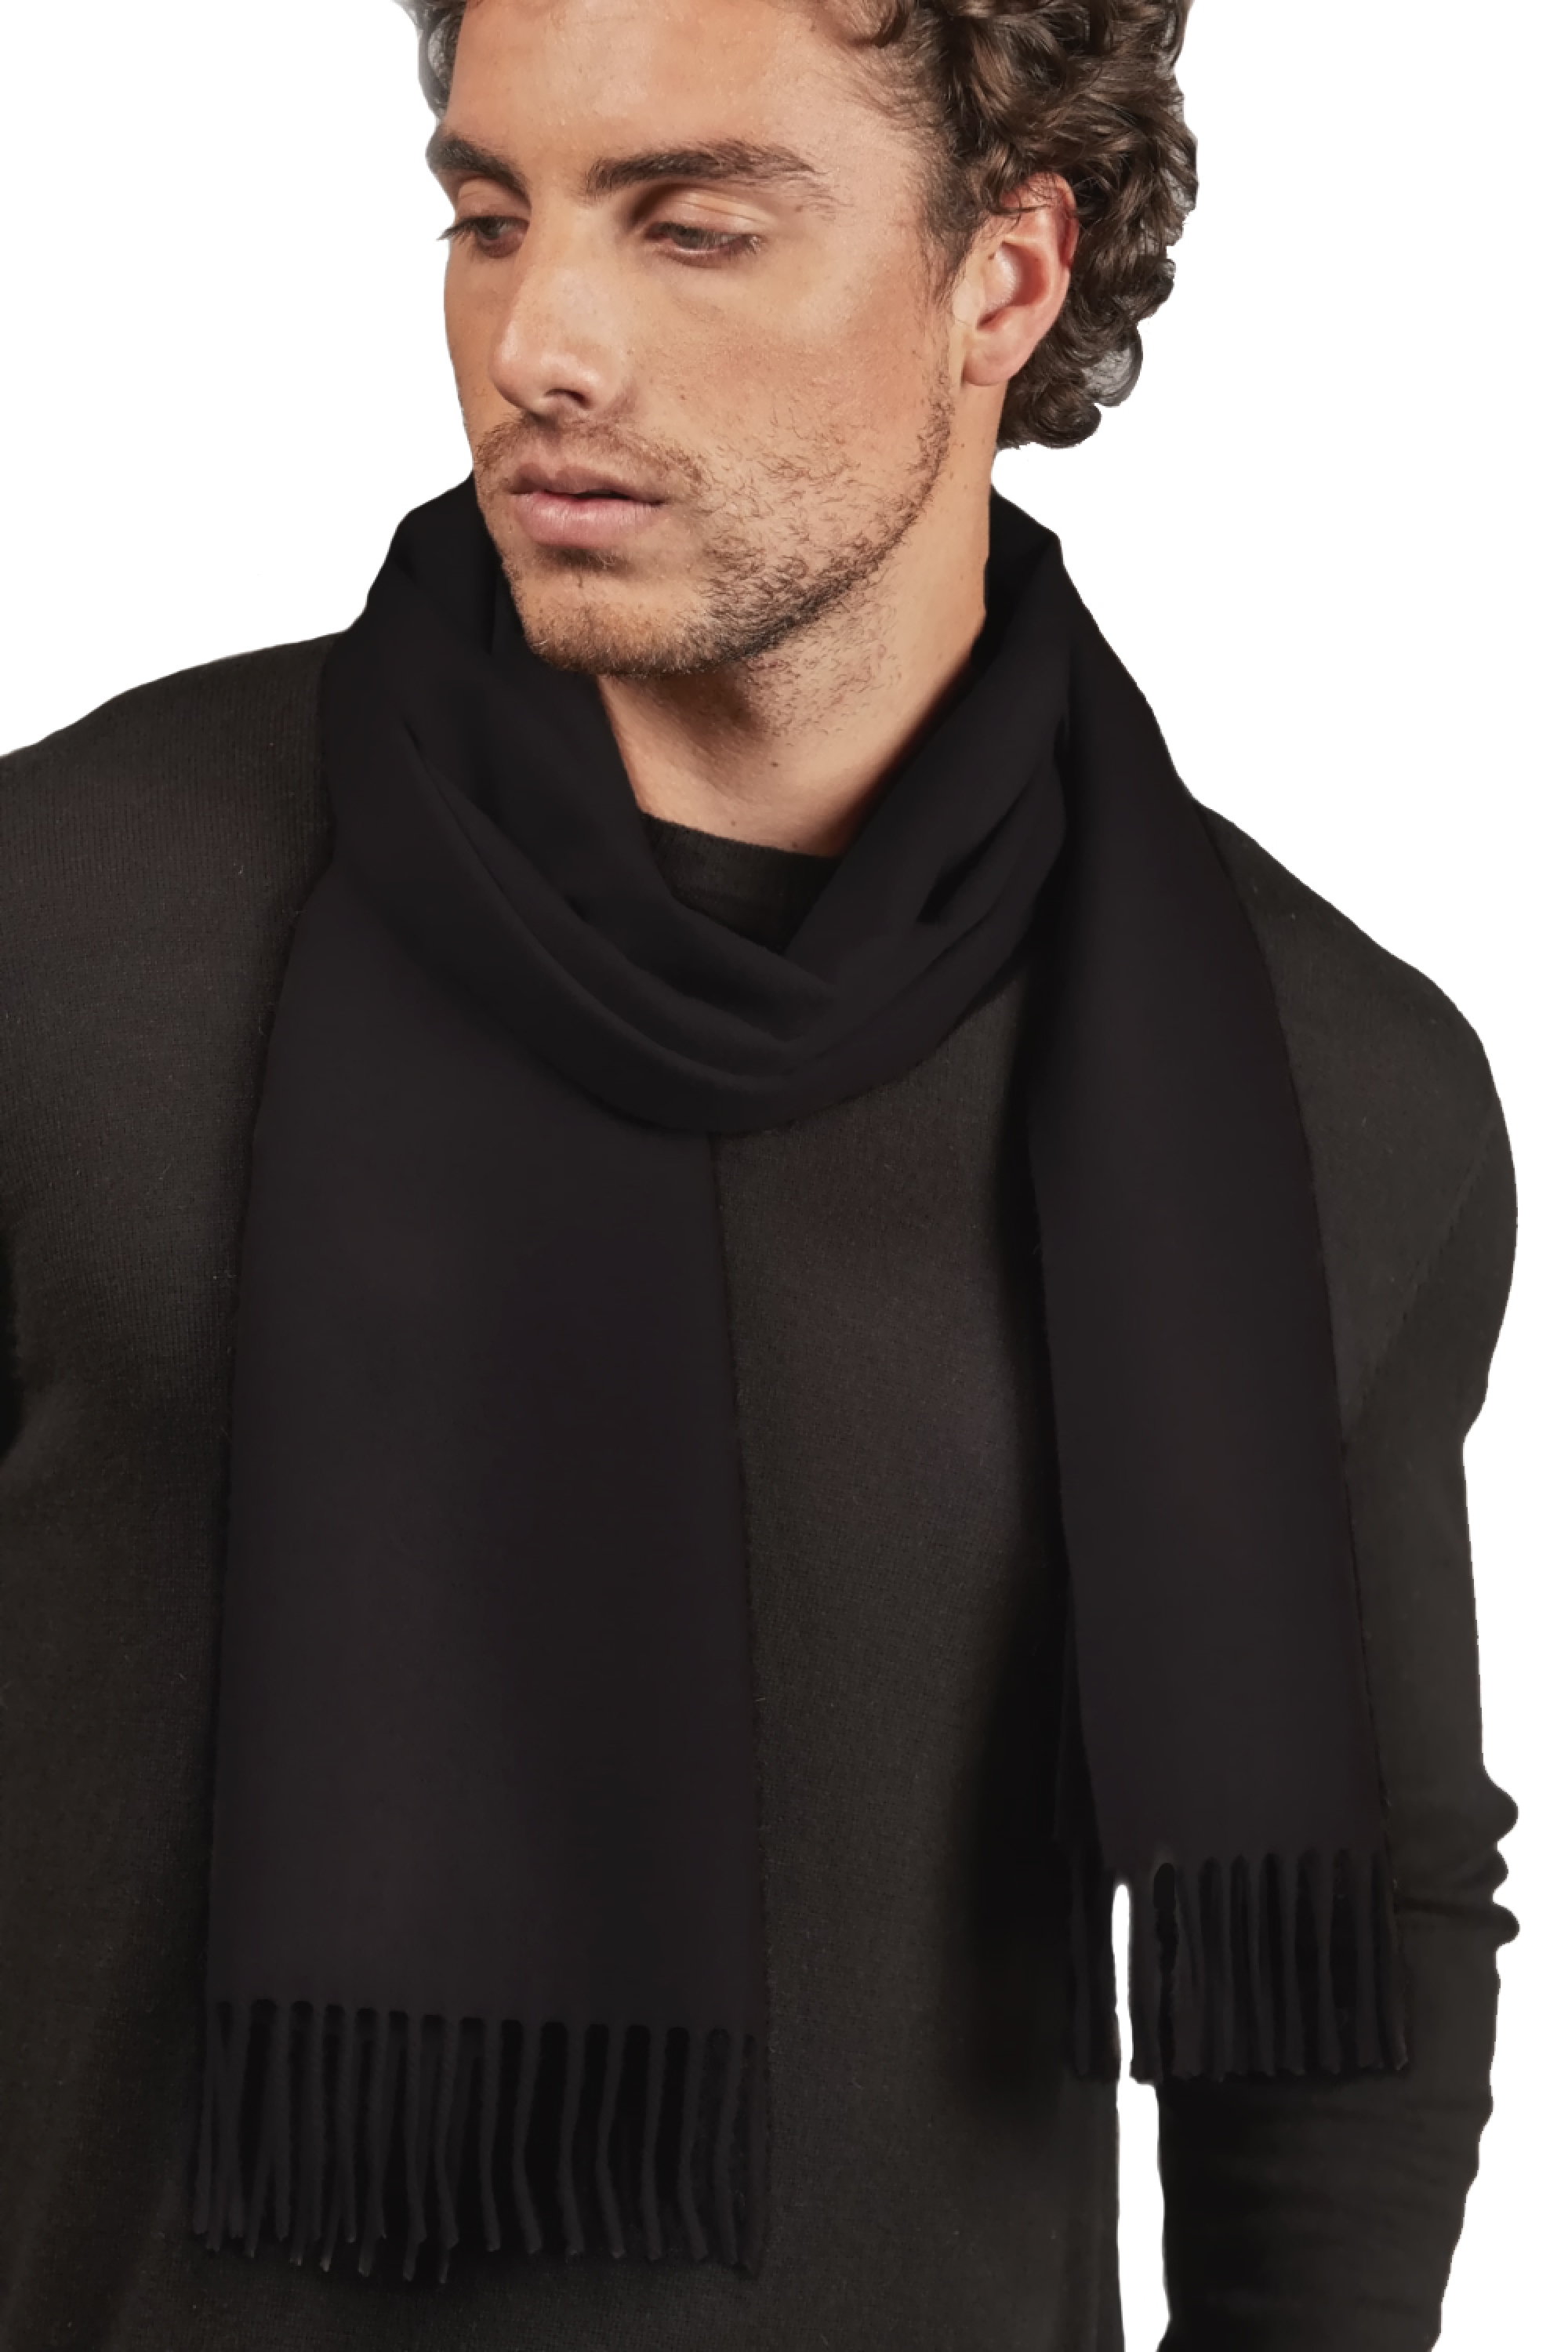 Vicuna dames kasjmier sjaals vicunazak zwart 175 x 30 cm